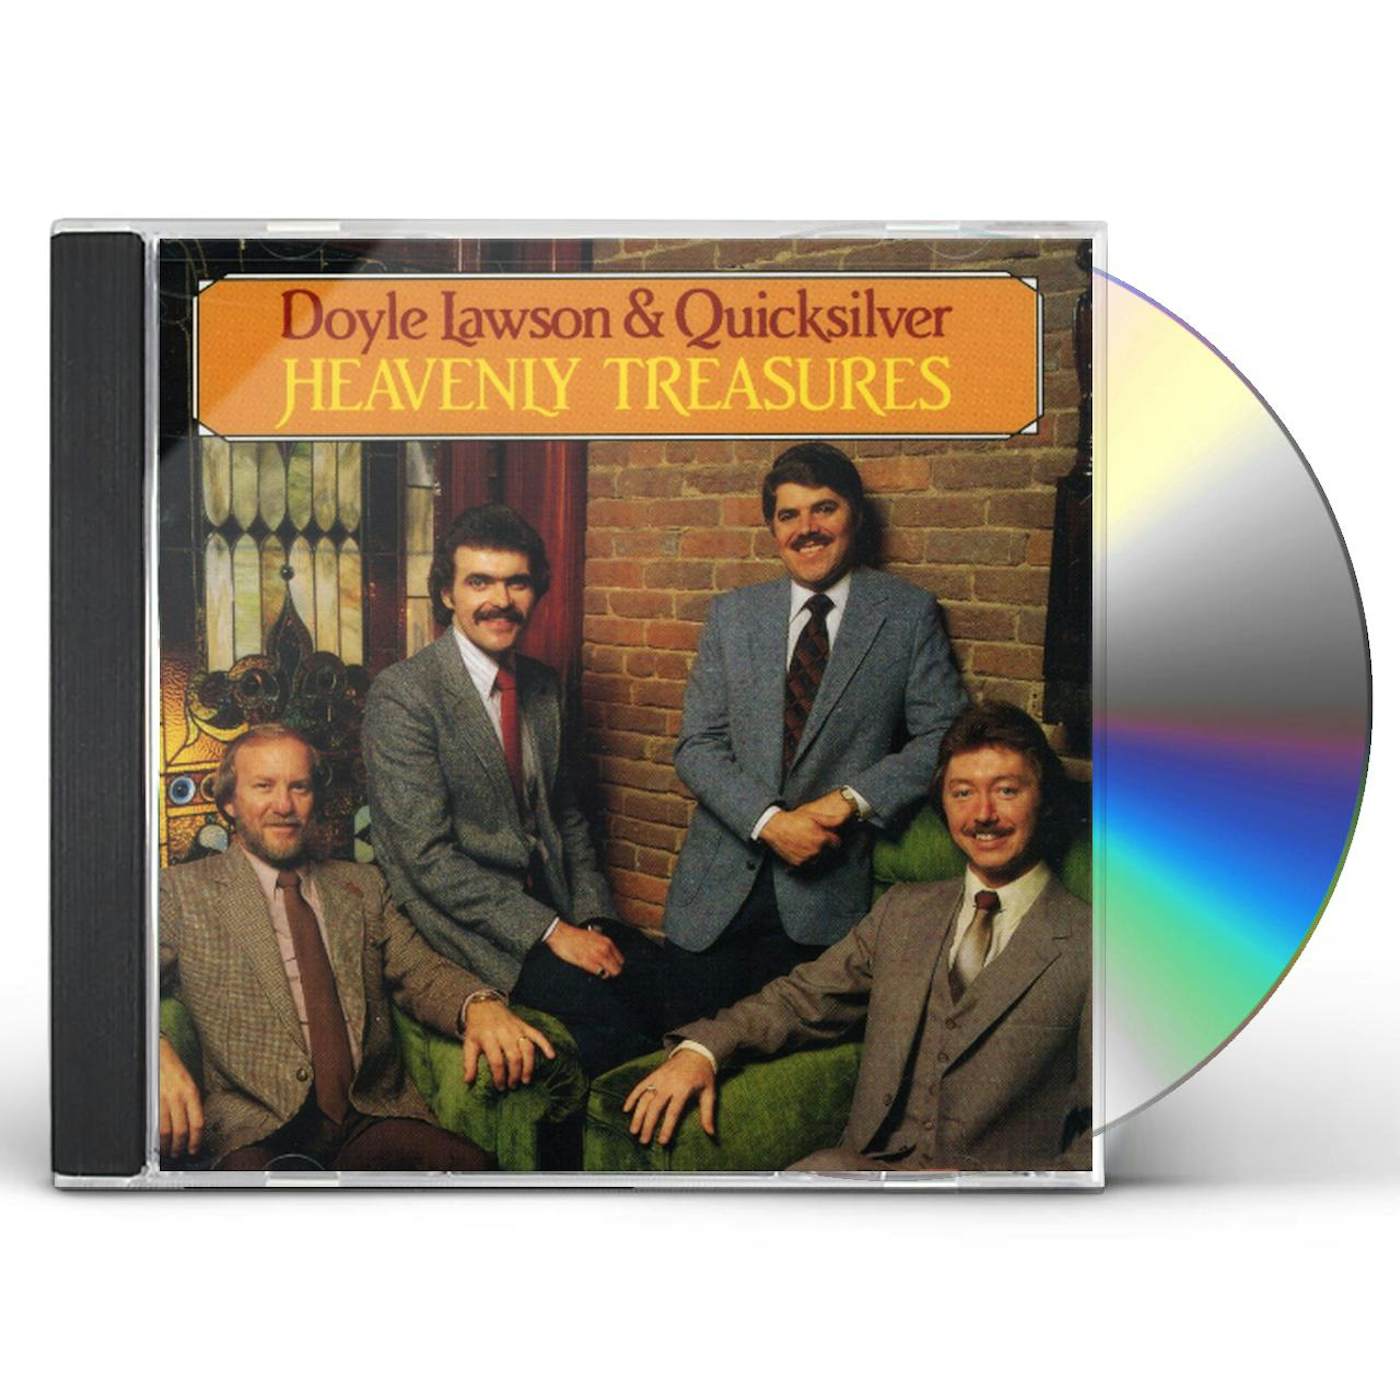 Doyle Lawson & Quicksilver HEAVENLY TREASURES CD